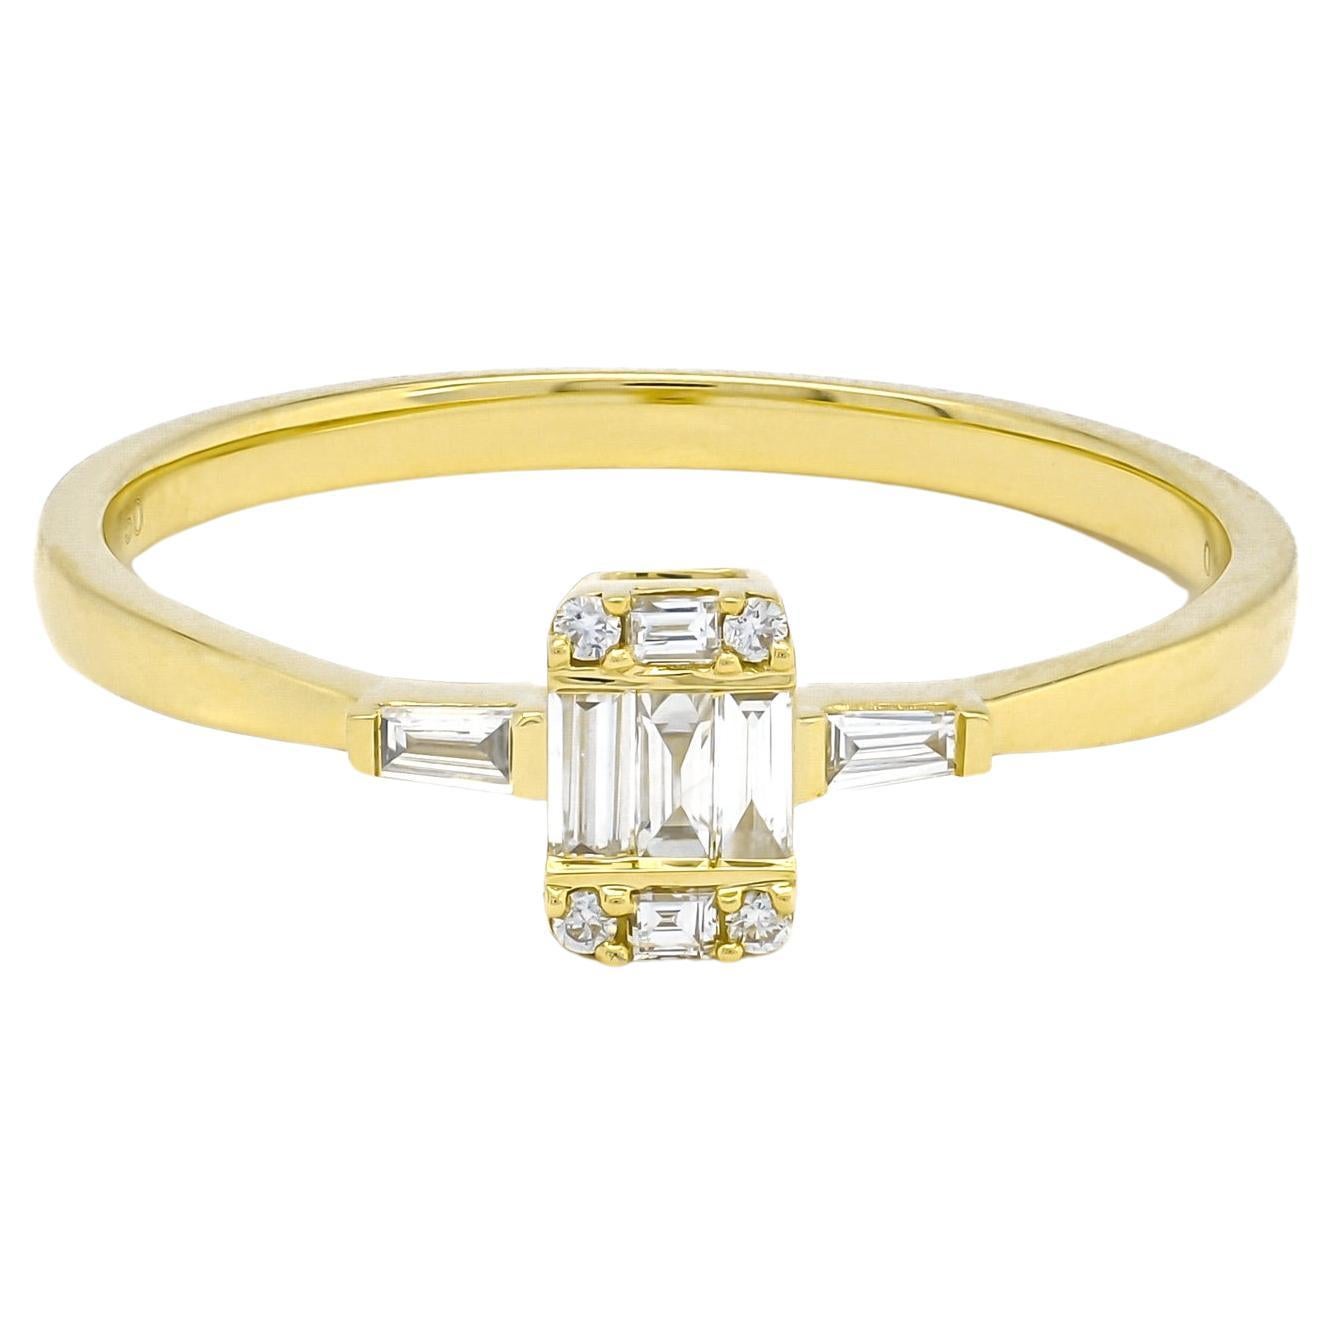 Natural Diamond 0.19CT 18Karat Yellow Gold Engagement Ring